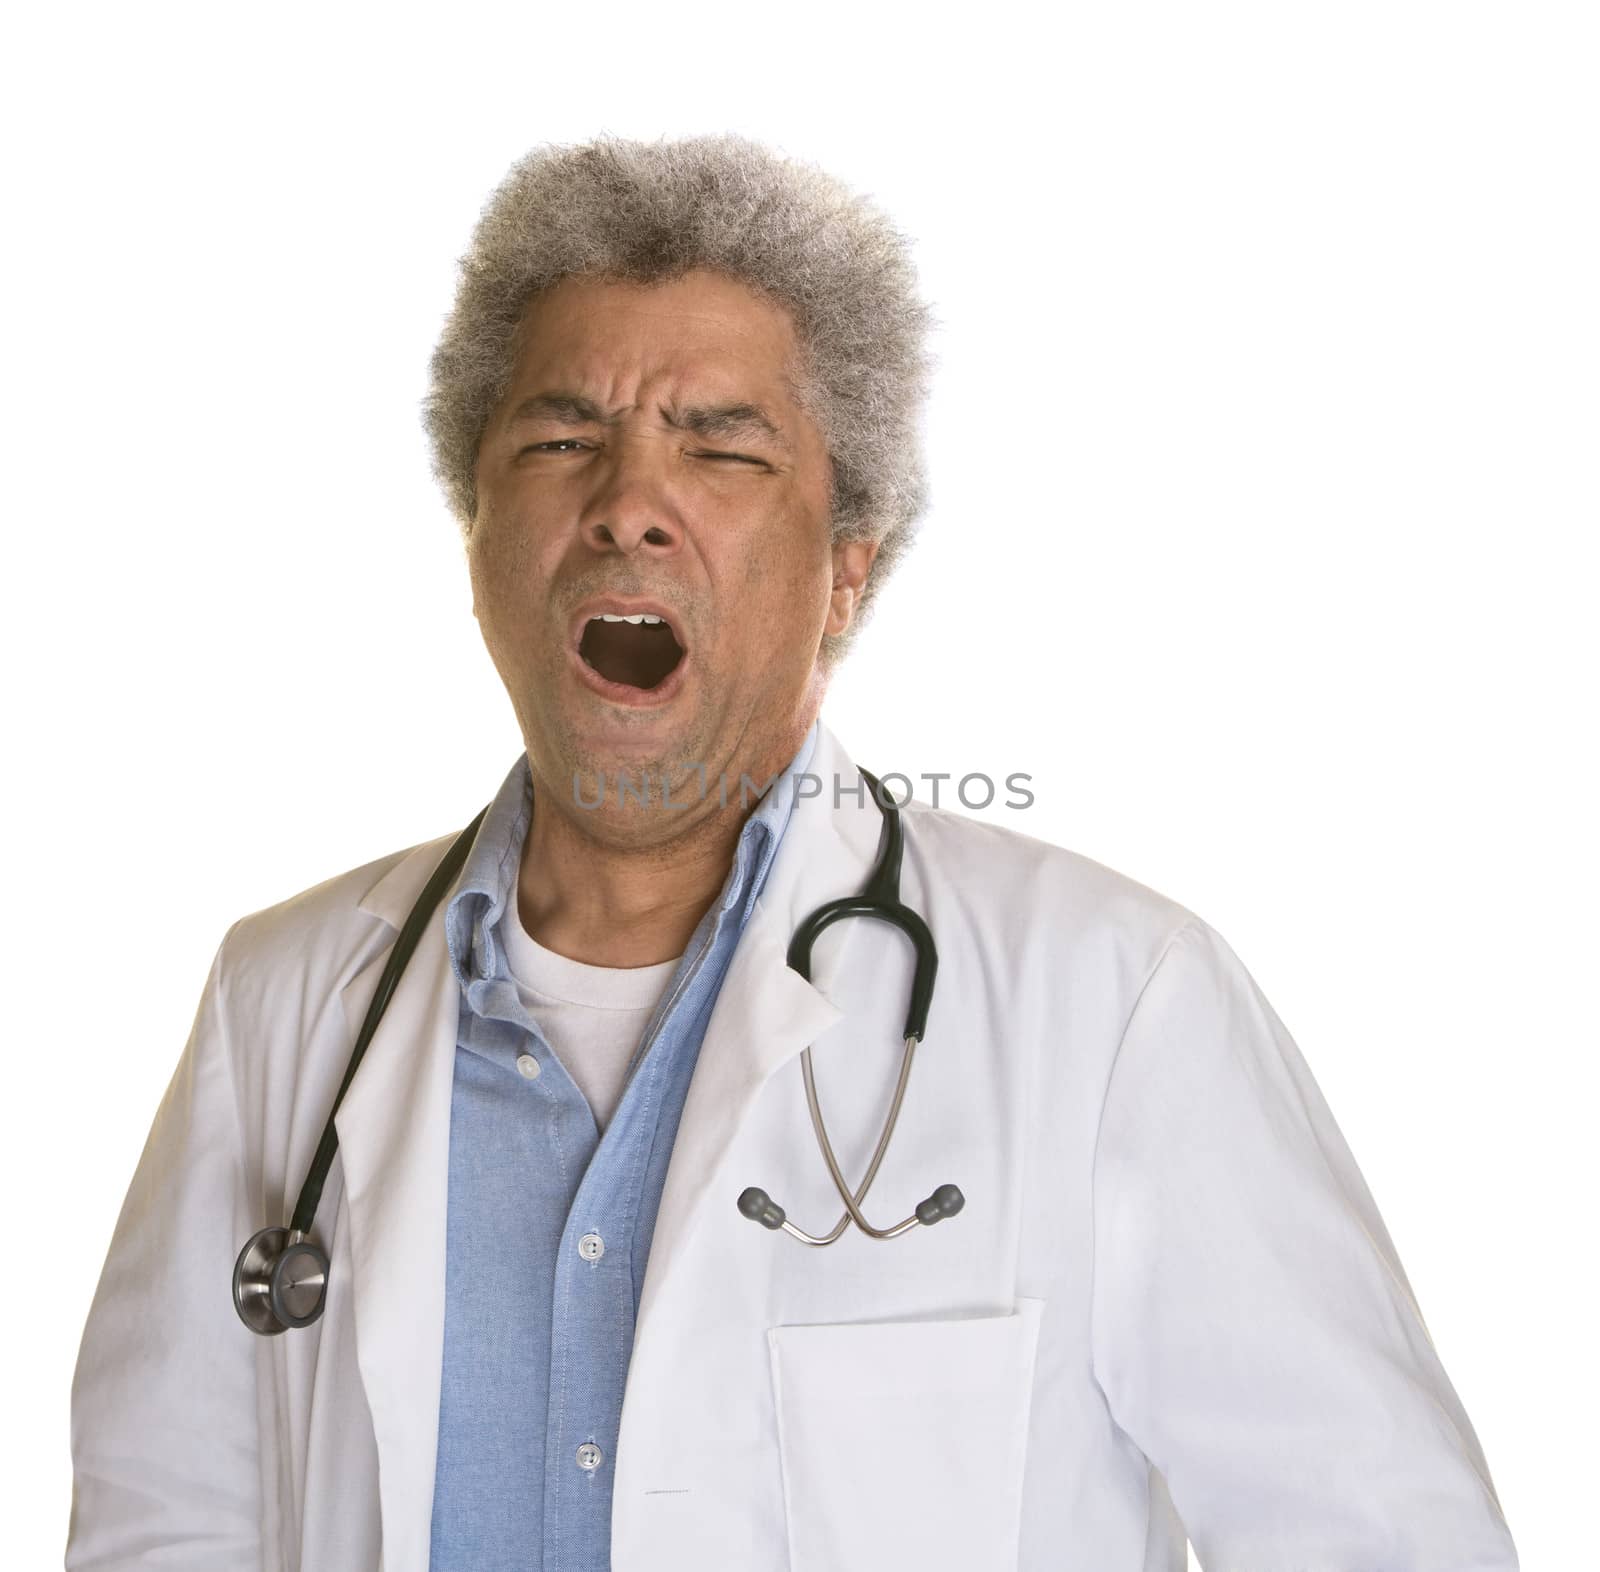 Yawning Black doctor with stethoscope on white background